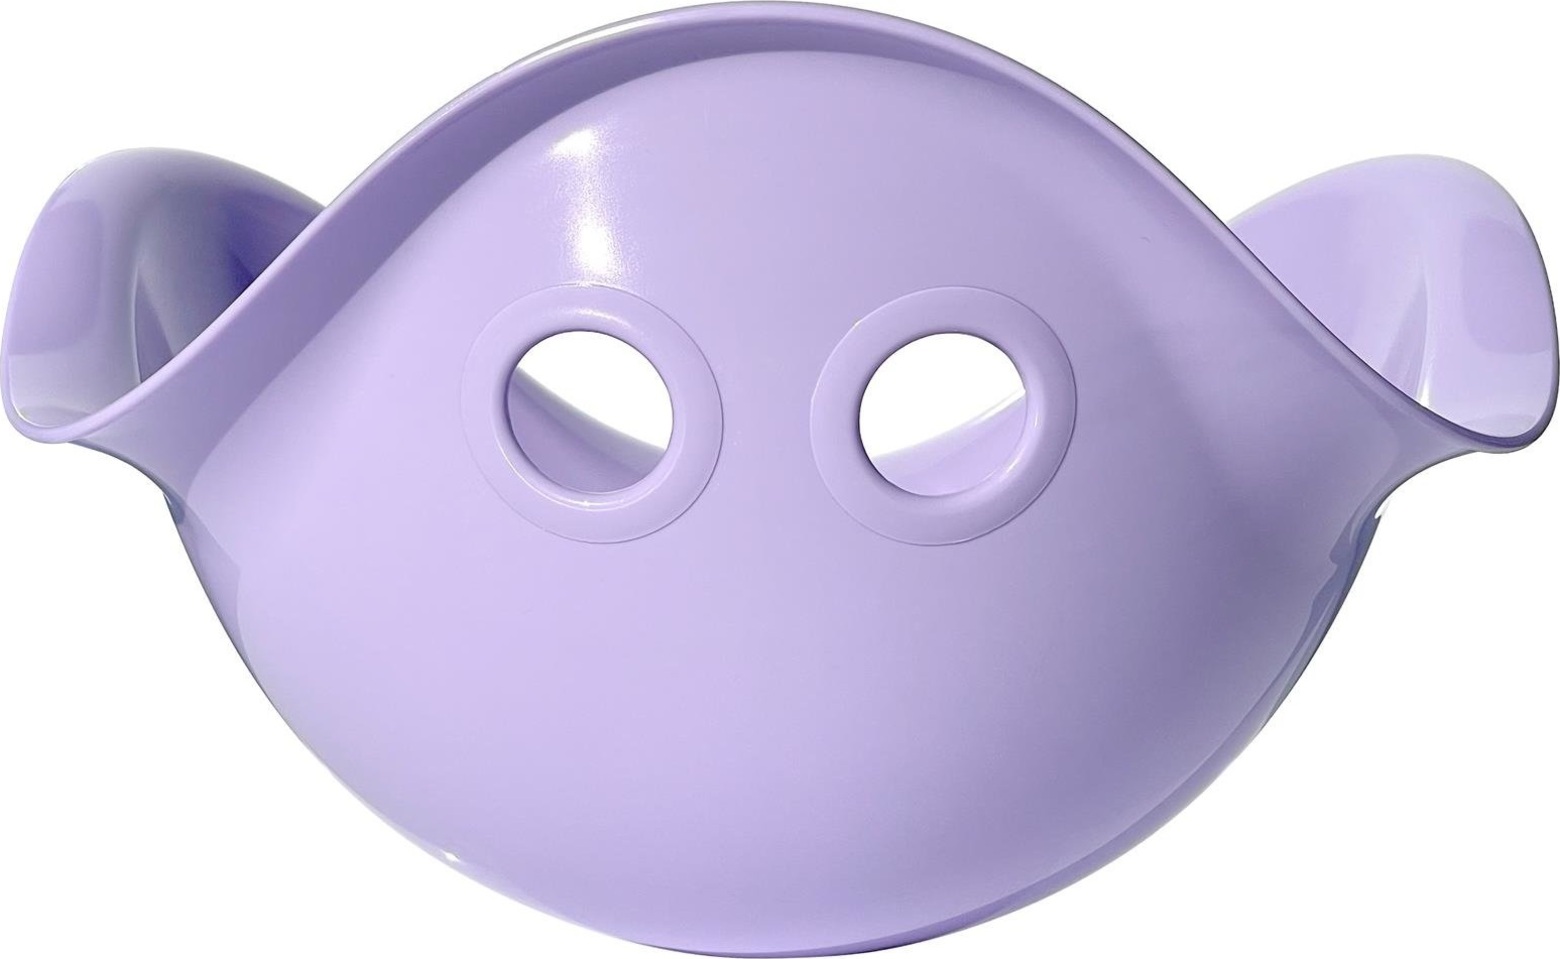 MOLUK BILIBO multifunkční hračka pastelová světle fialová